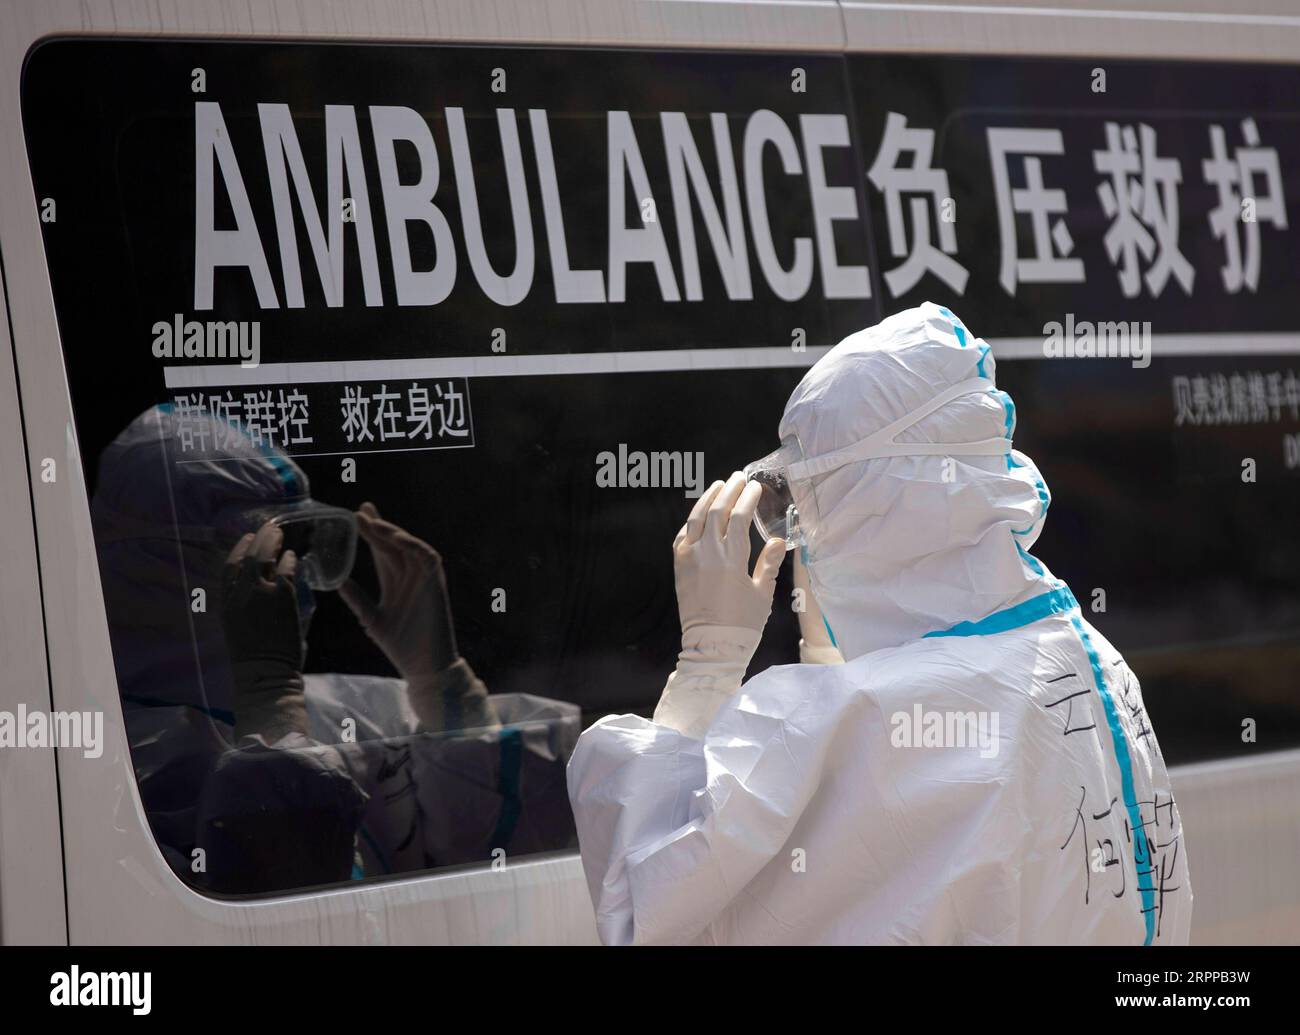 Coronavirus in China, Eindrücke aus Wuhan 200314 -- WUHAN, 14 marzo 2020 -- membro del team He Xueping controlla la maschera a Wuhan, provincia di Hubei, Cina centrale, 14 marzo 2020. In mezzo all'epidemia di coronavirus, molte squadre trasferite combattono in prima linea. Esposti al pericolo di infezione, si spostano tra gli ospedali e le stazioni di trattamento medico 24 ore su 24 per assicurarsi che i pazienti vengano trasportati in luoghi designati in tempo. Nove membri della provincia dello Yunnan, vale a dire Liu Jianyong, Huang Jie, Yang Hui, Yao Hongjun, Wu Hongkun, Liu Mengdi, He Xueping, Pang Qingli e Yue Dingkun, ma Foto Stock